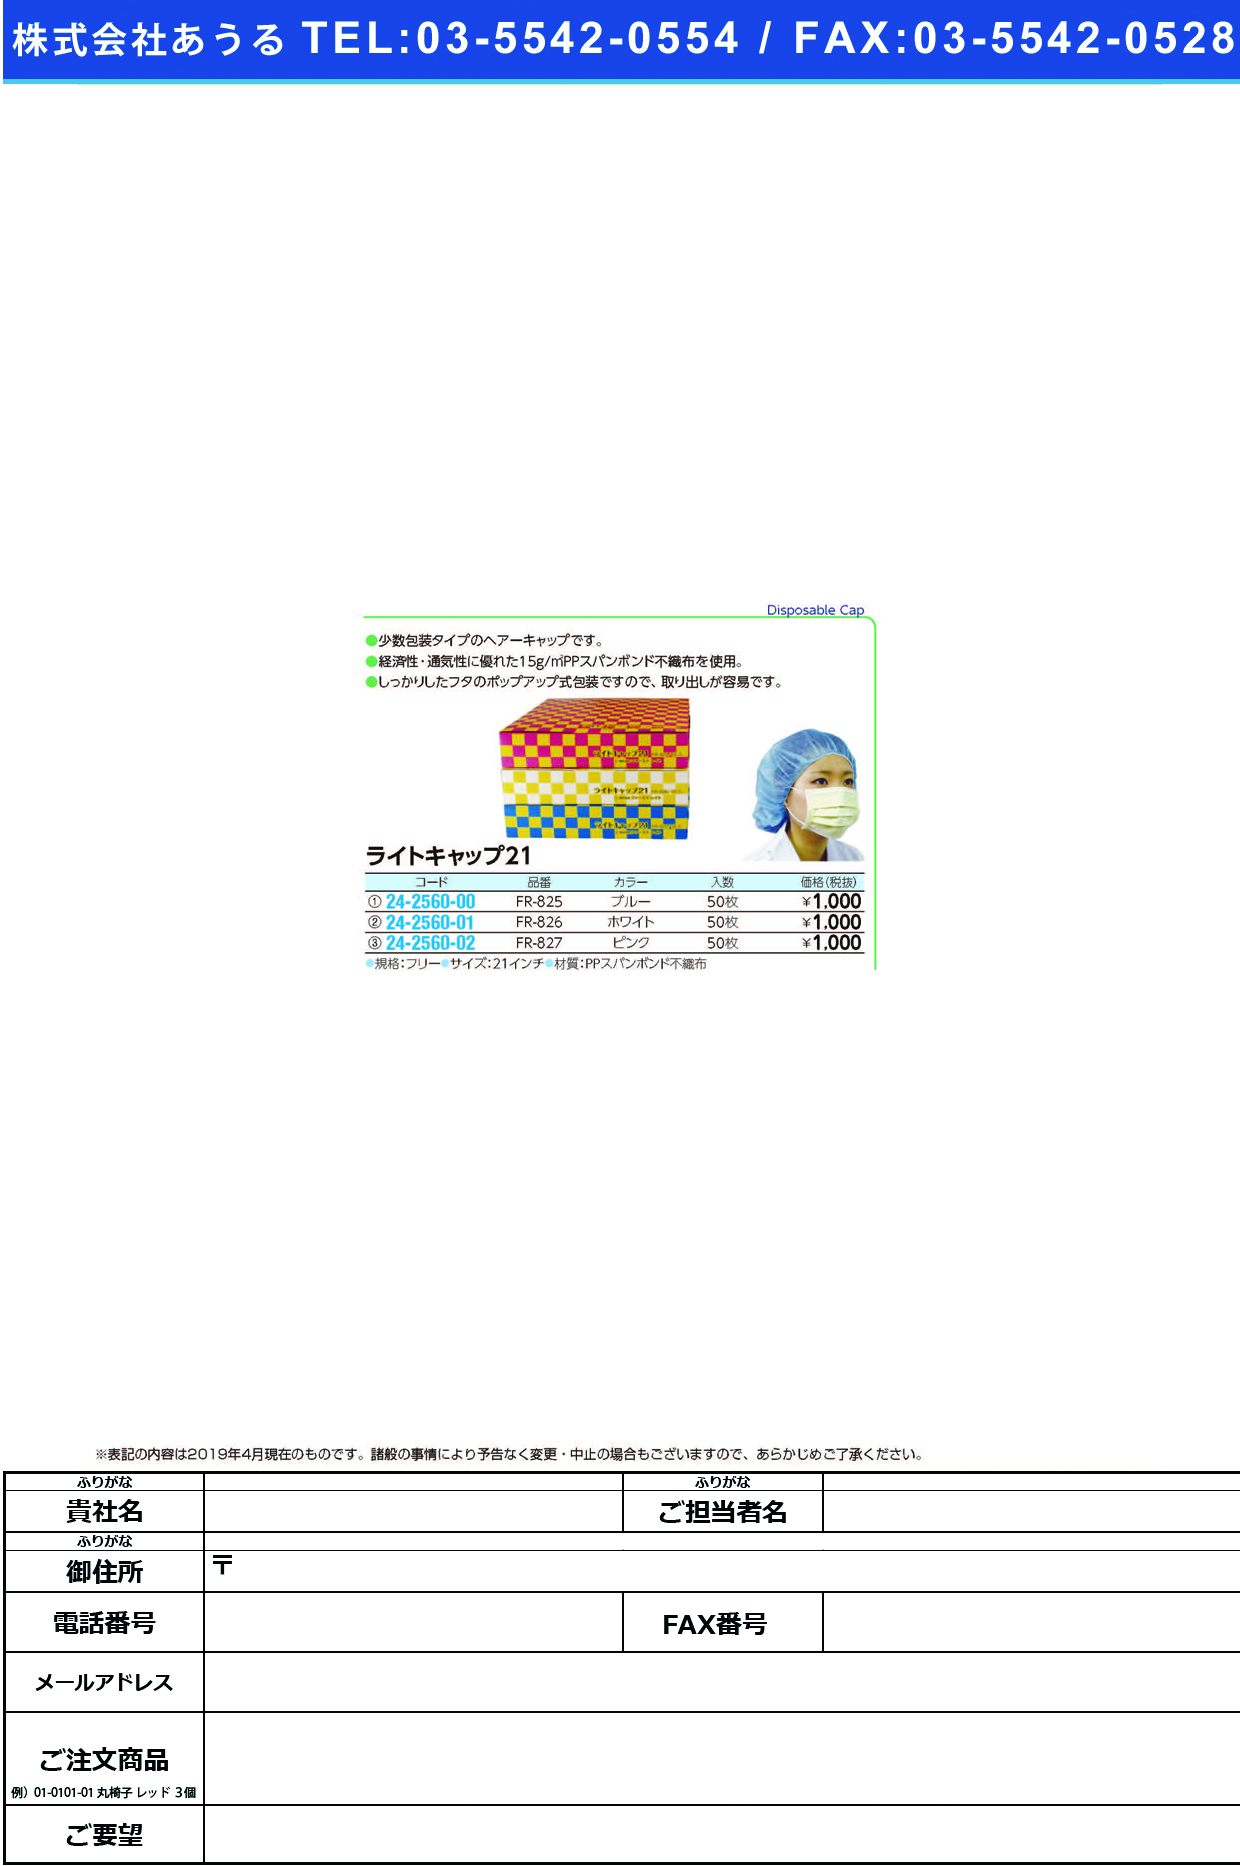 (24-2560-01)ライトキャップ２１ FR-826(ﾎﾜｲﾄ)50ﾏｲｲﾘ ﾗｲﾄｷｬｯﾌﾟ21(ファーストレイト)【1箱単位】【2019年カタログ商品】